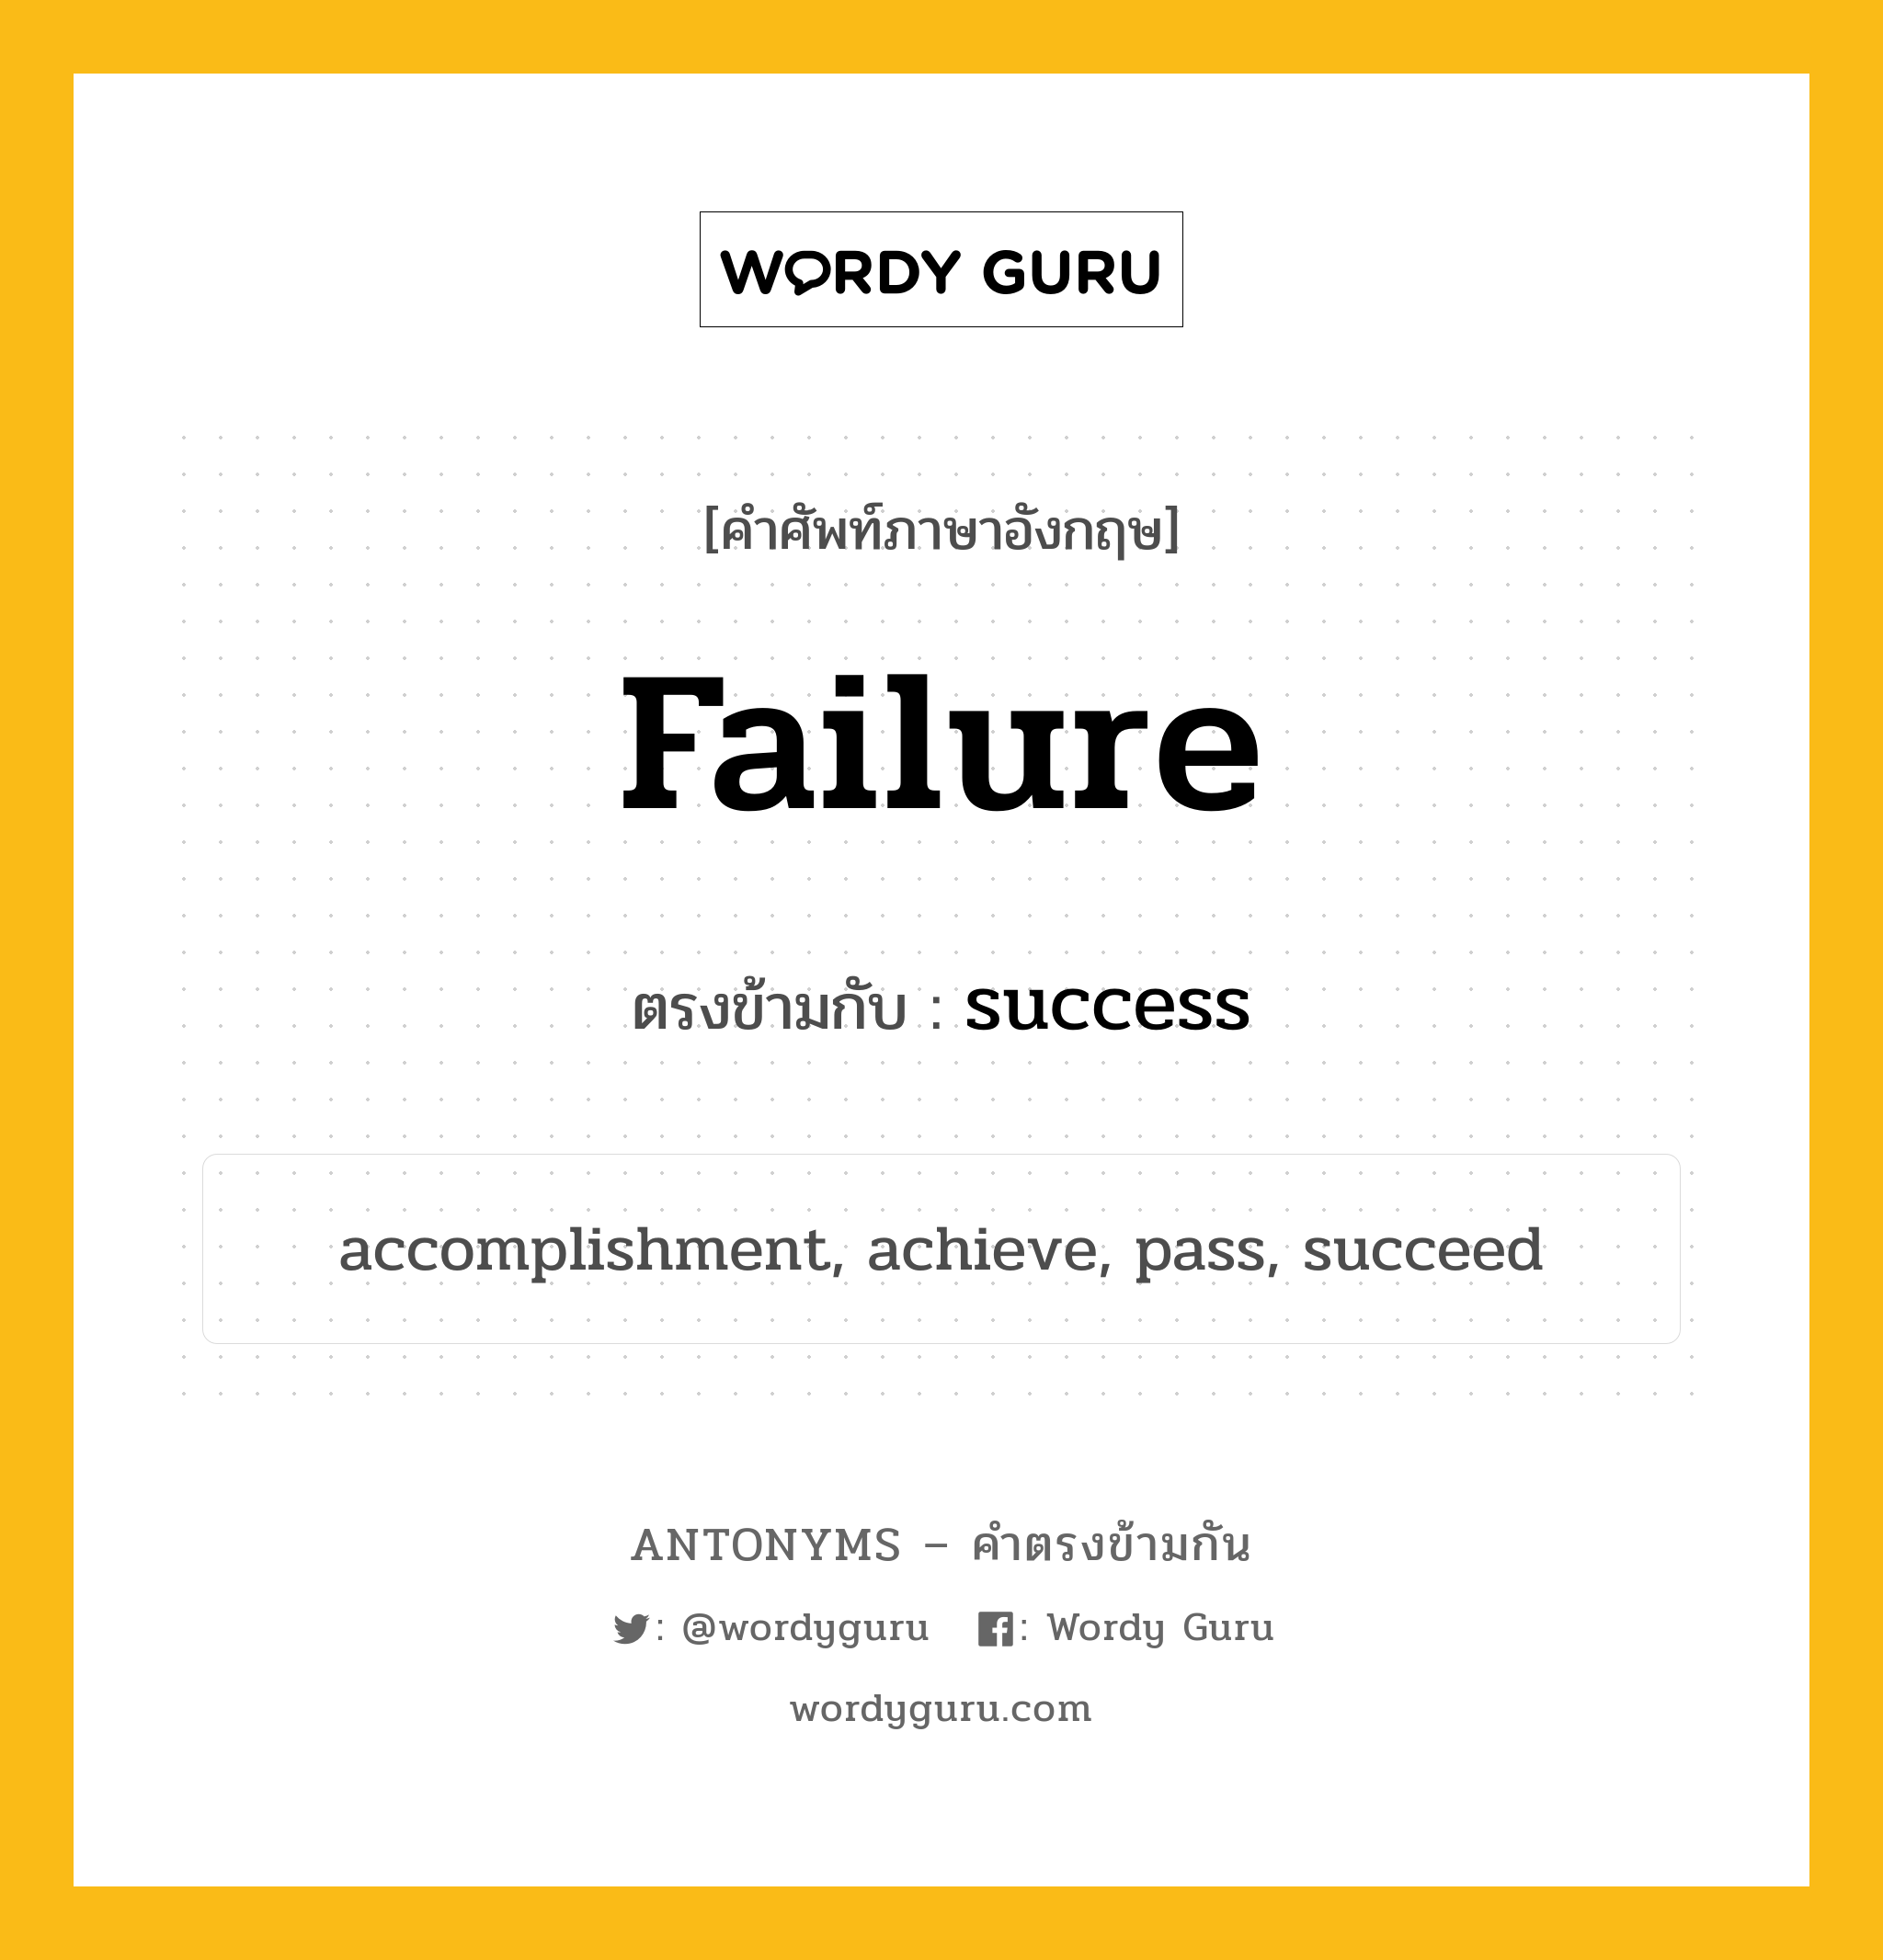 failure เป็นคำตรงข้ามกับคำไหนบ้าง?, คำศัพท์ภาษาอังกฤษ failure ตรงข้ามกับ success หมวด success